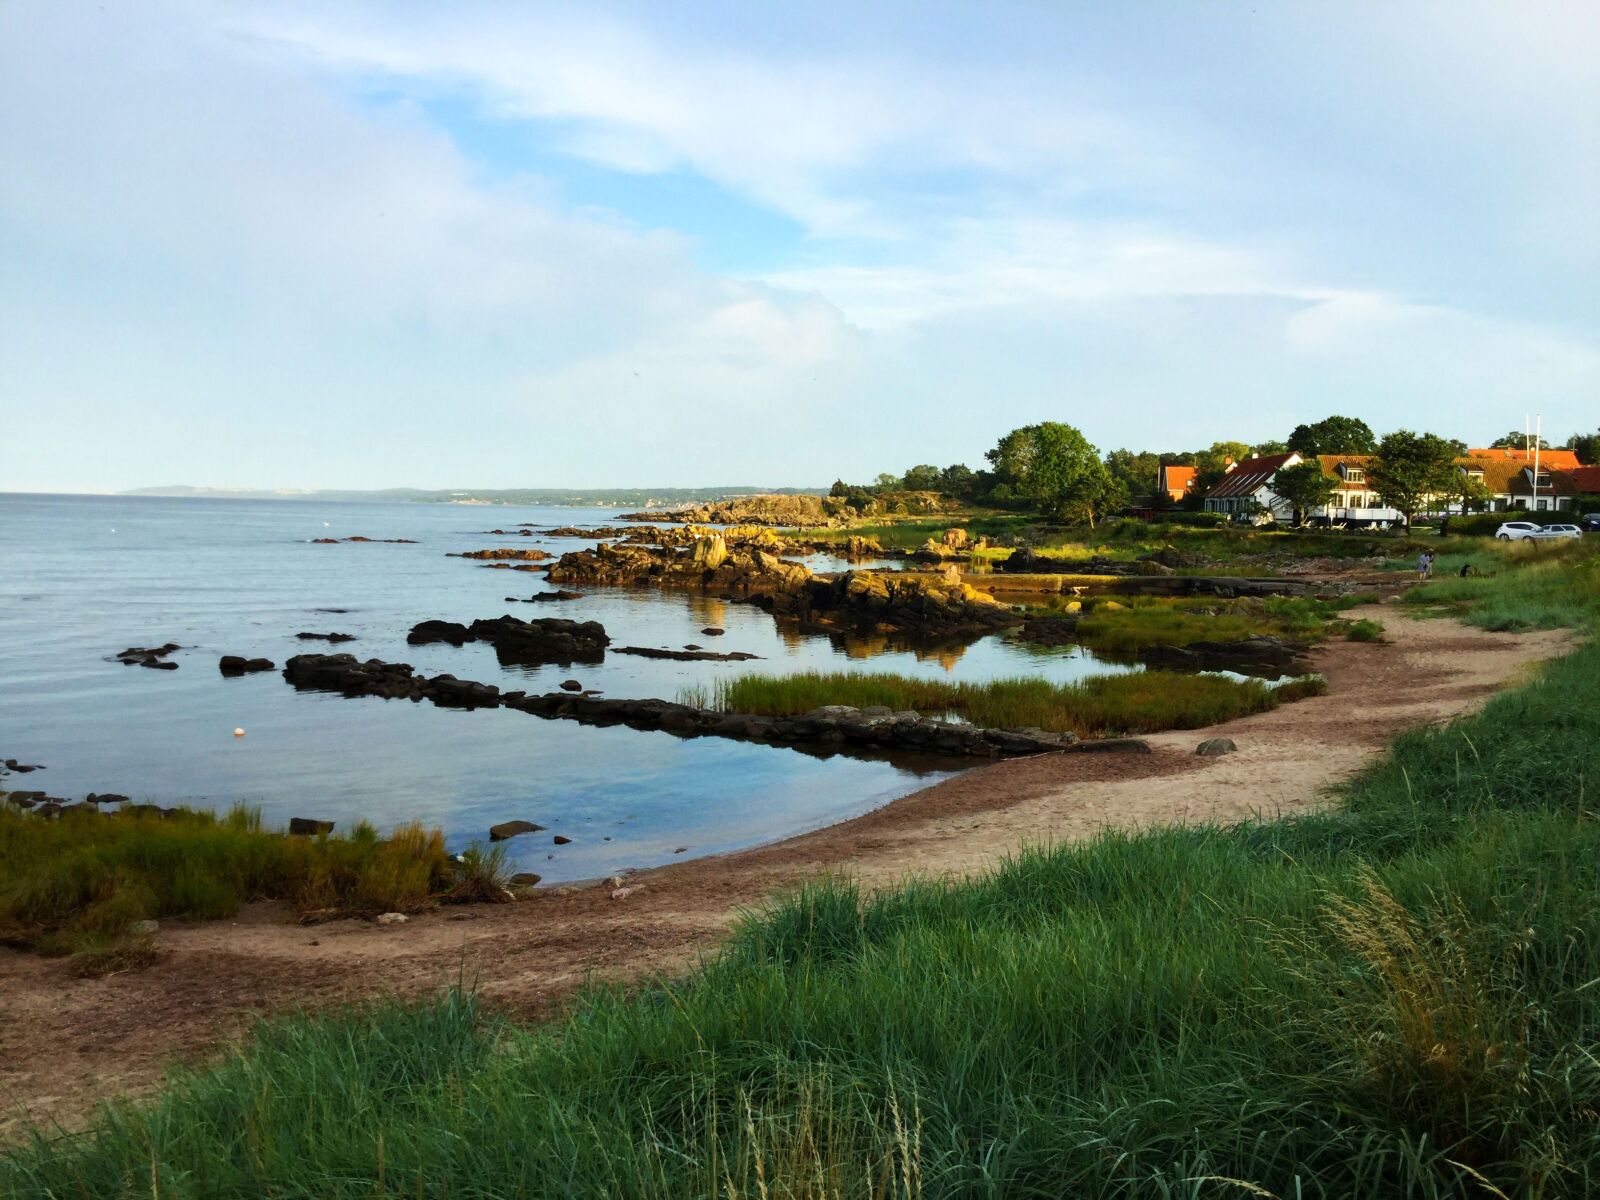 iPad mini 4 back camera 3.3mm f/2.4 sample photo. Bornholm, sea, the coast photography